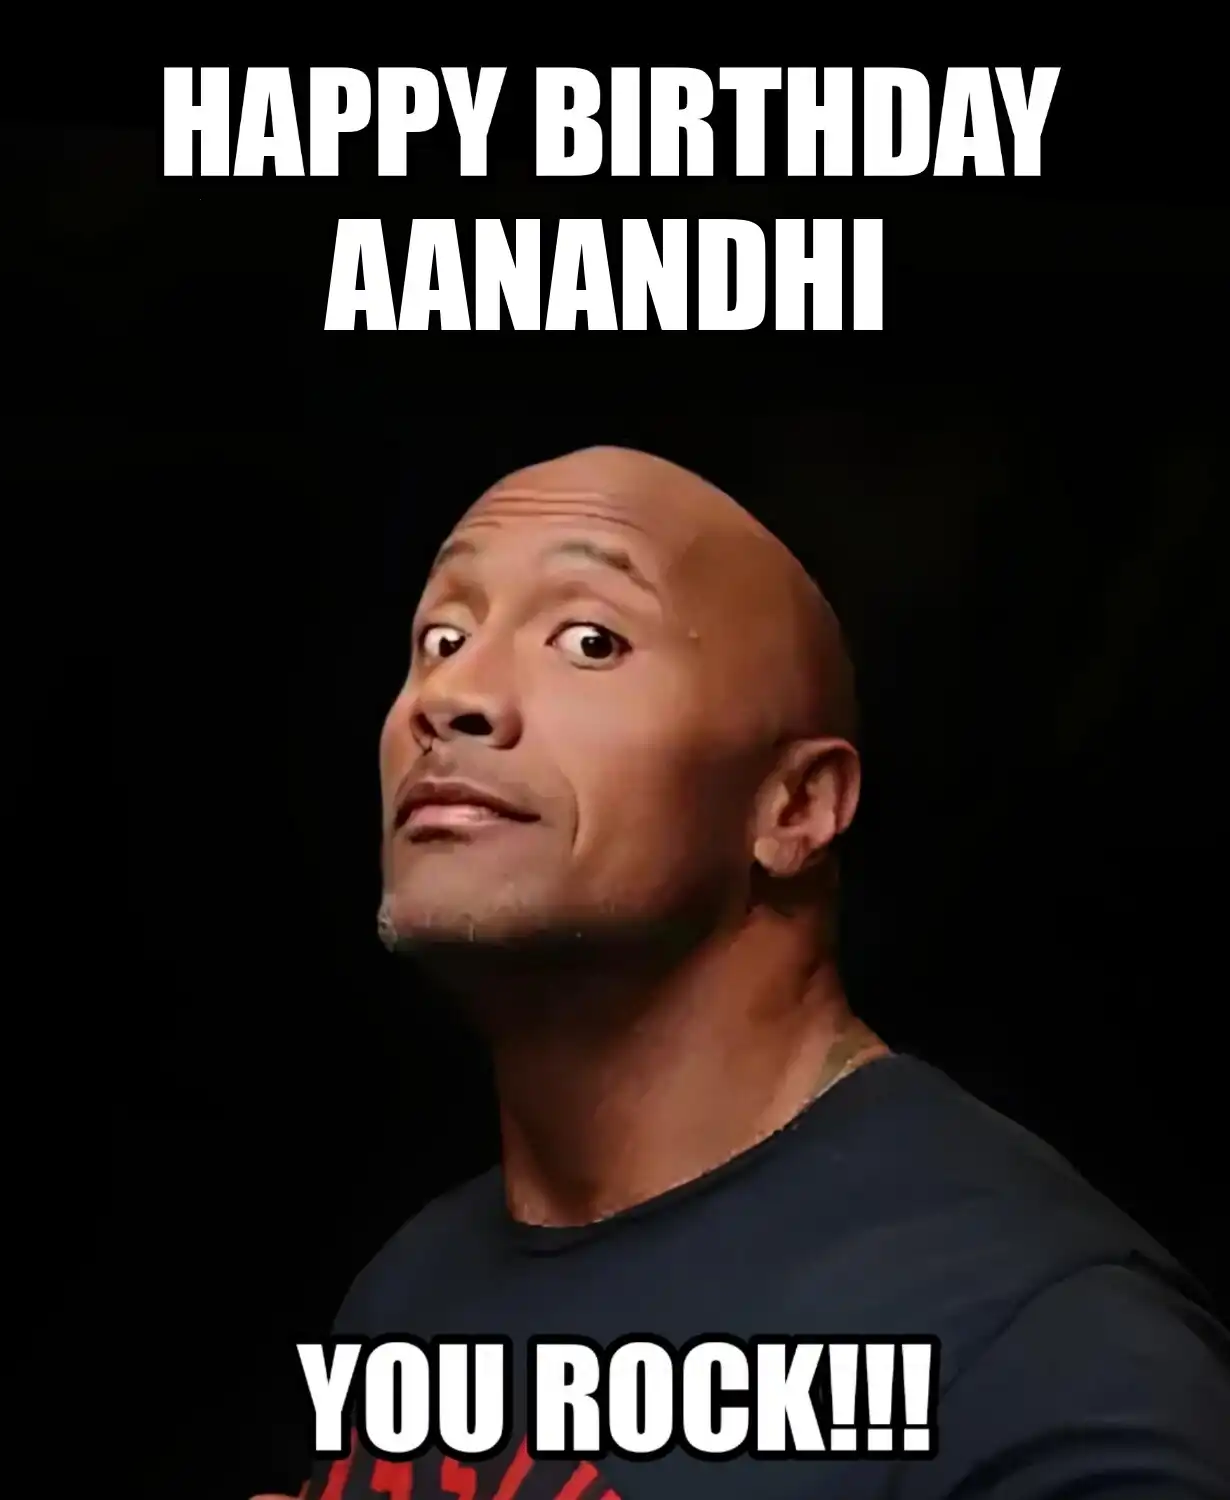 Happy Birthday Aanandhi You Rock Meme